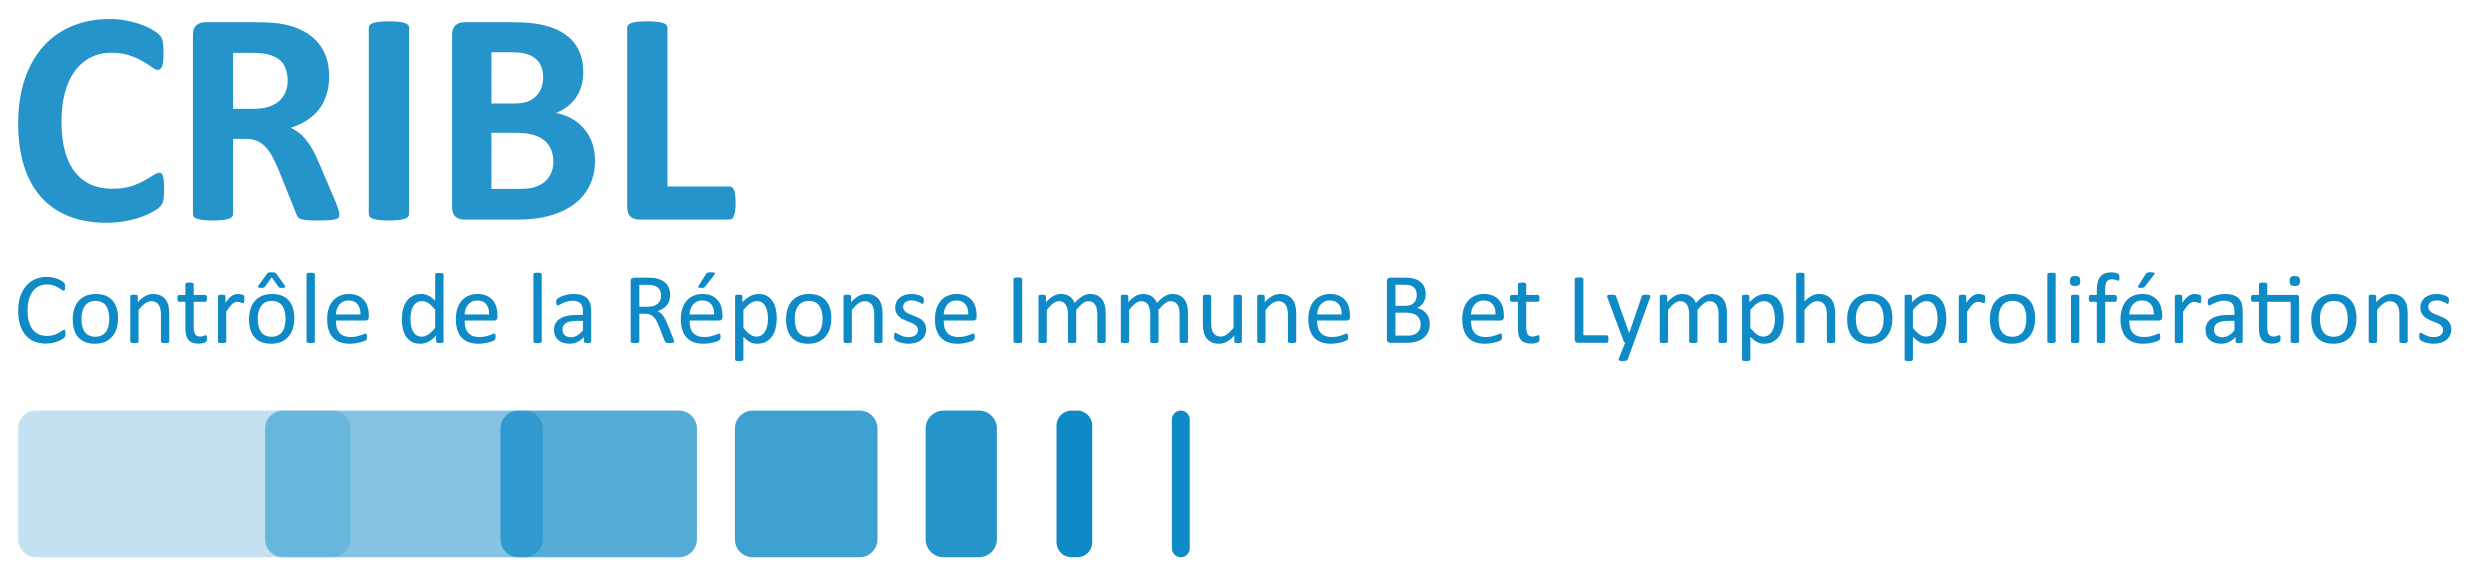 CRIBL - Contrôle de la Réponse Immune B et Lymphoproliférations UMR CNRS 7276 / INSERM U 1262